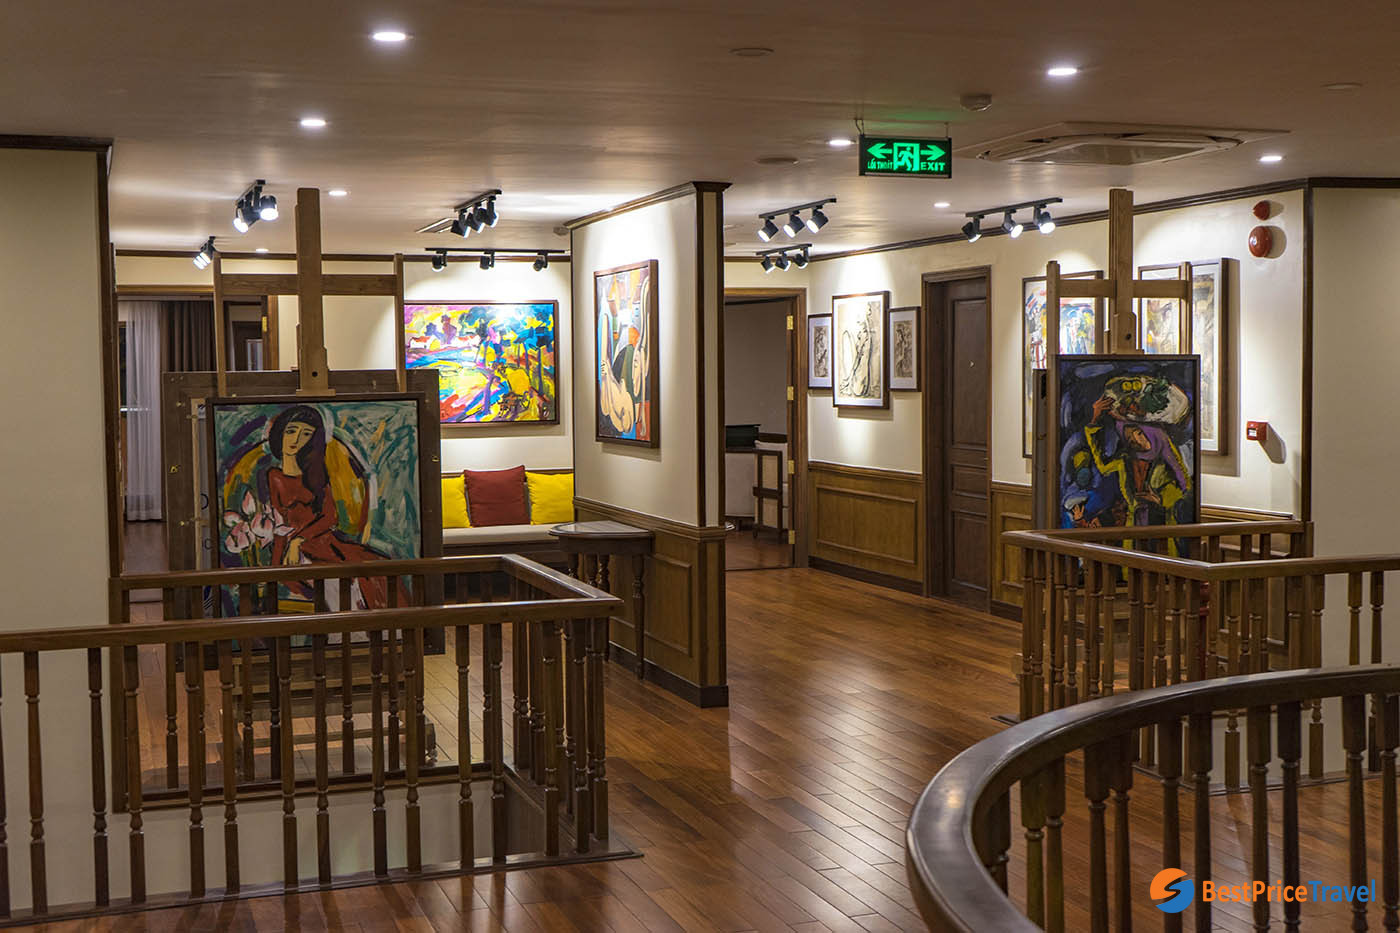 Heritage Cruise' Gallery Paintings